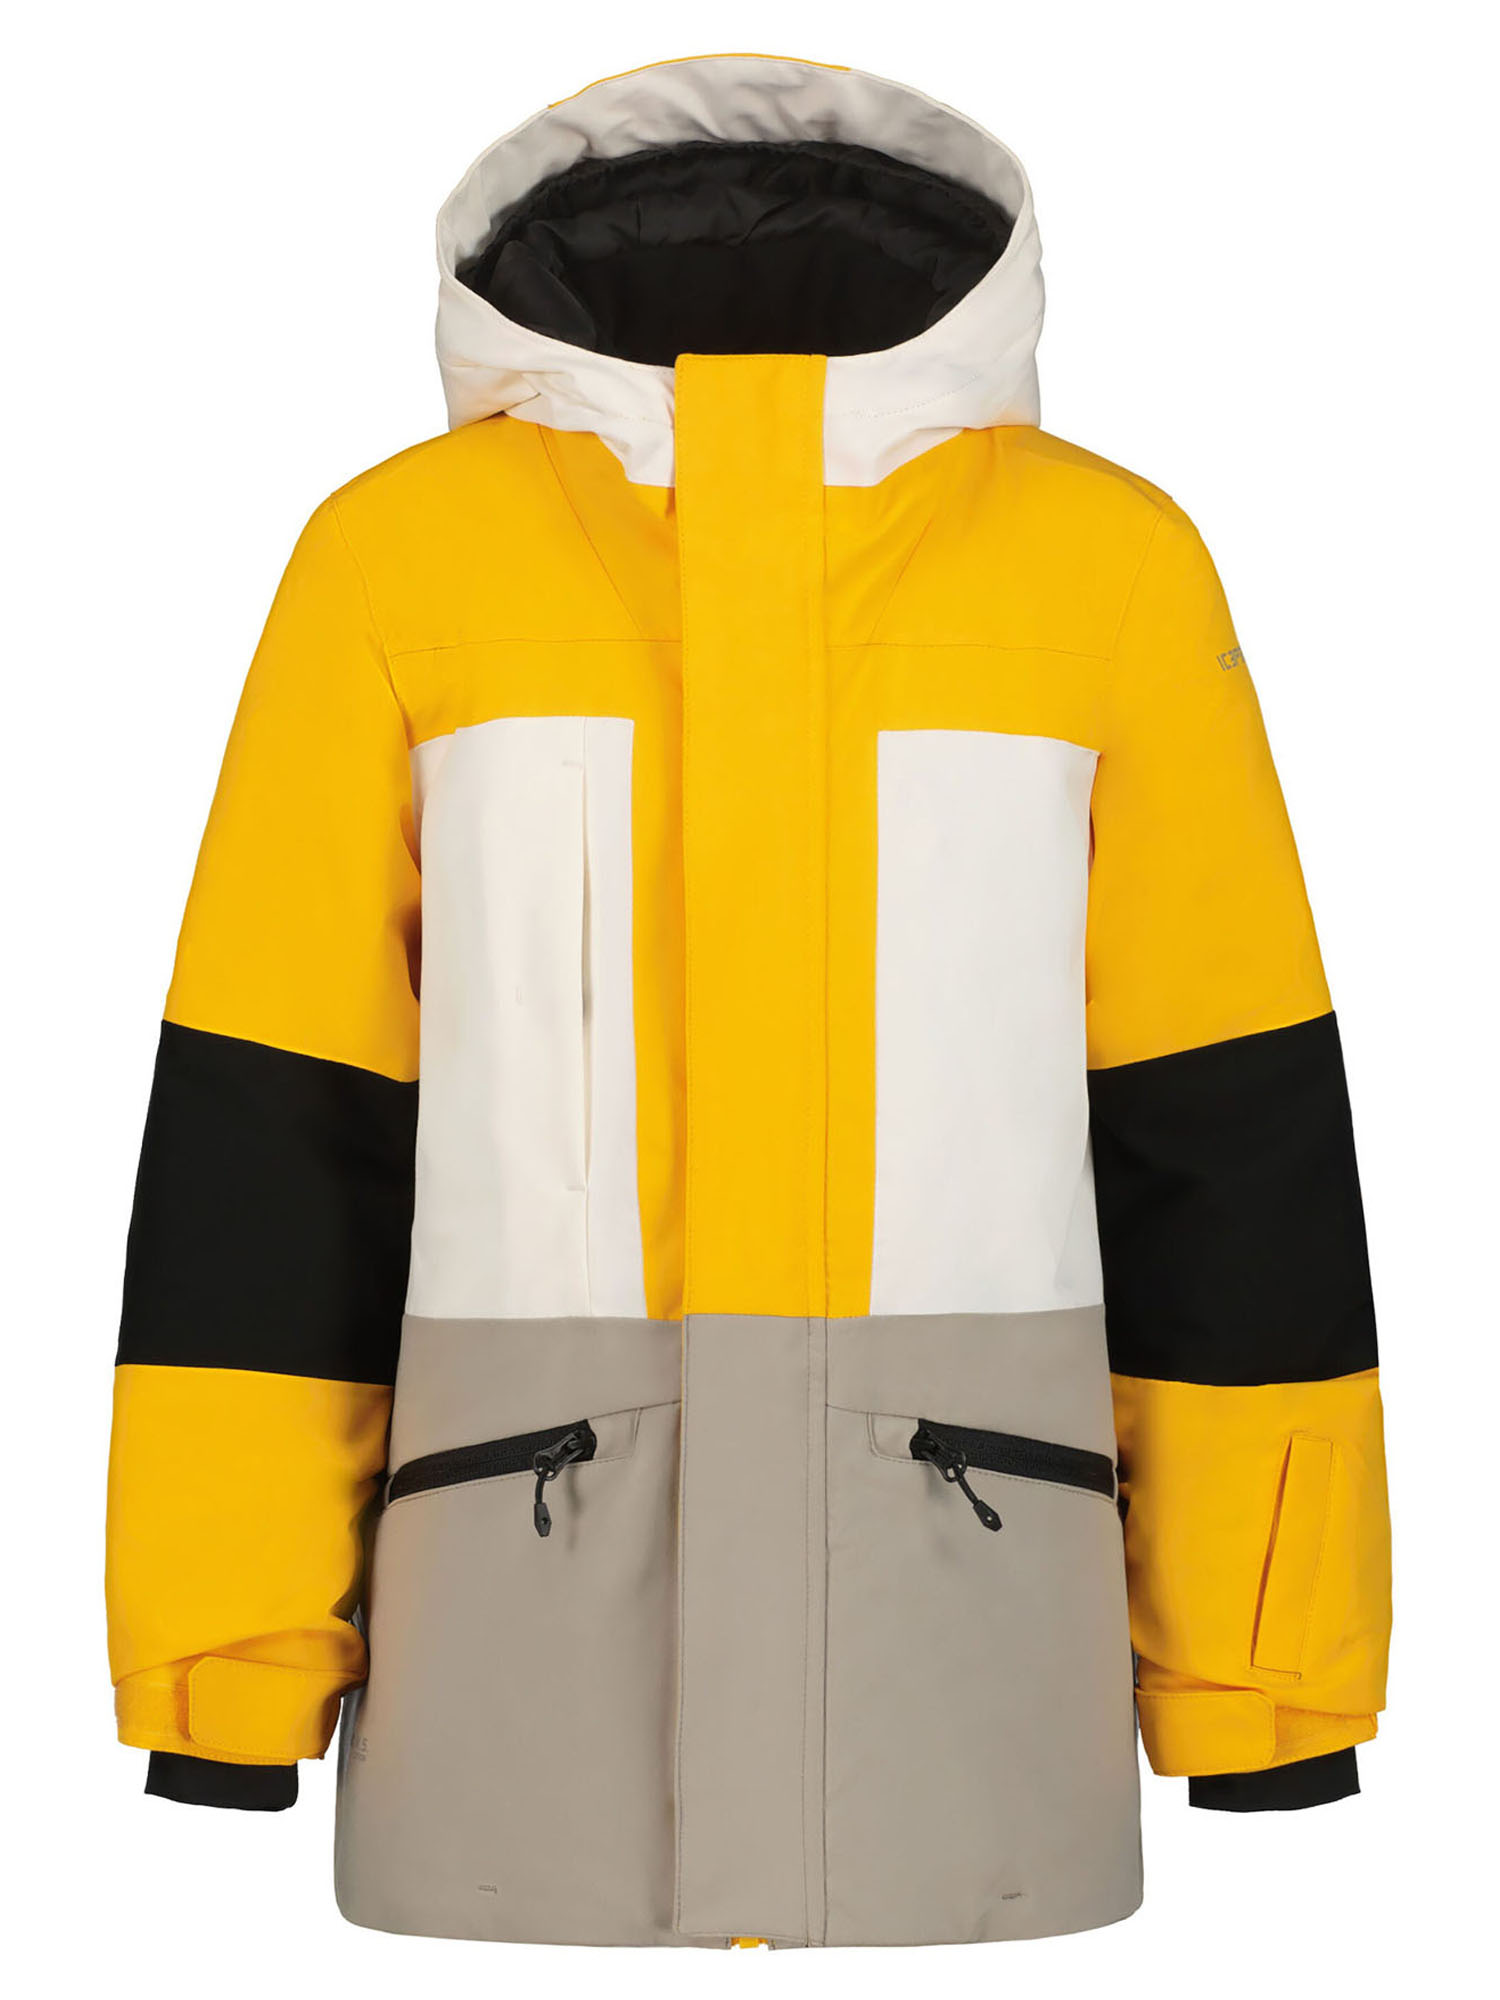 Куртка IcePeak 50039_437, бежевый - белый - желтый, 116 куртка утепленная женская icepeak clover синий